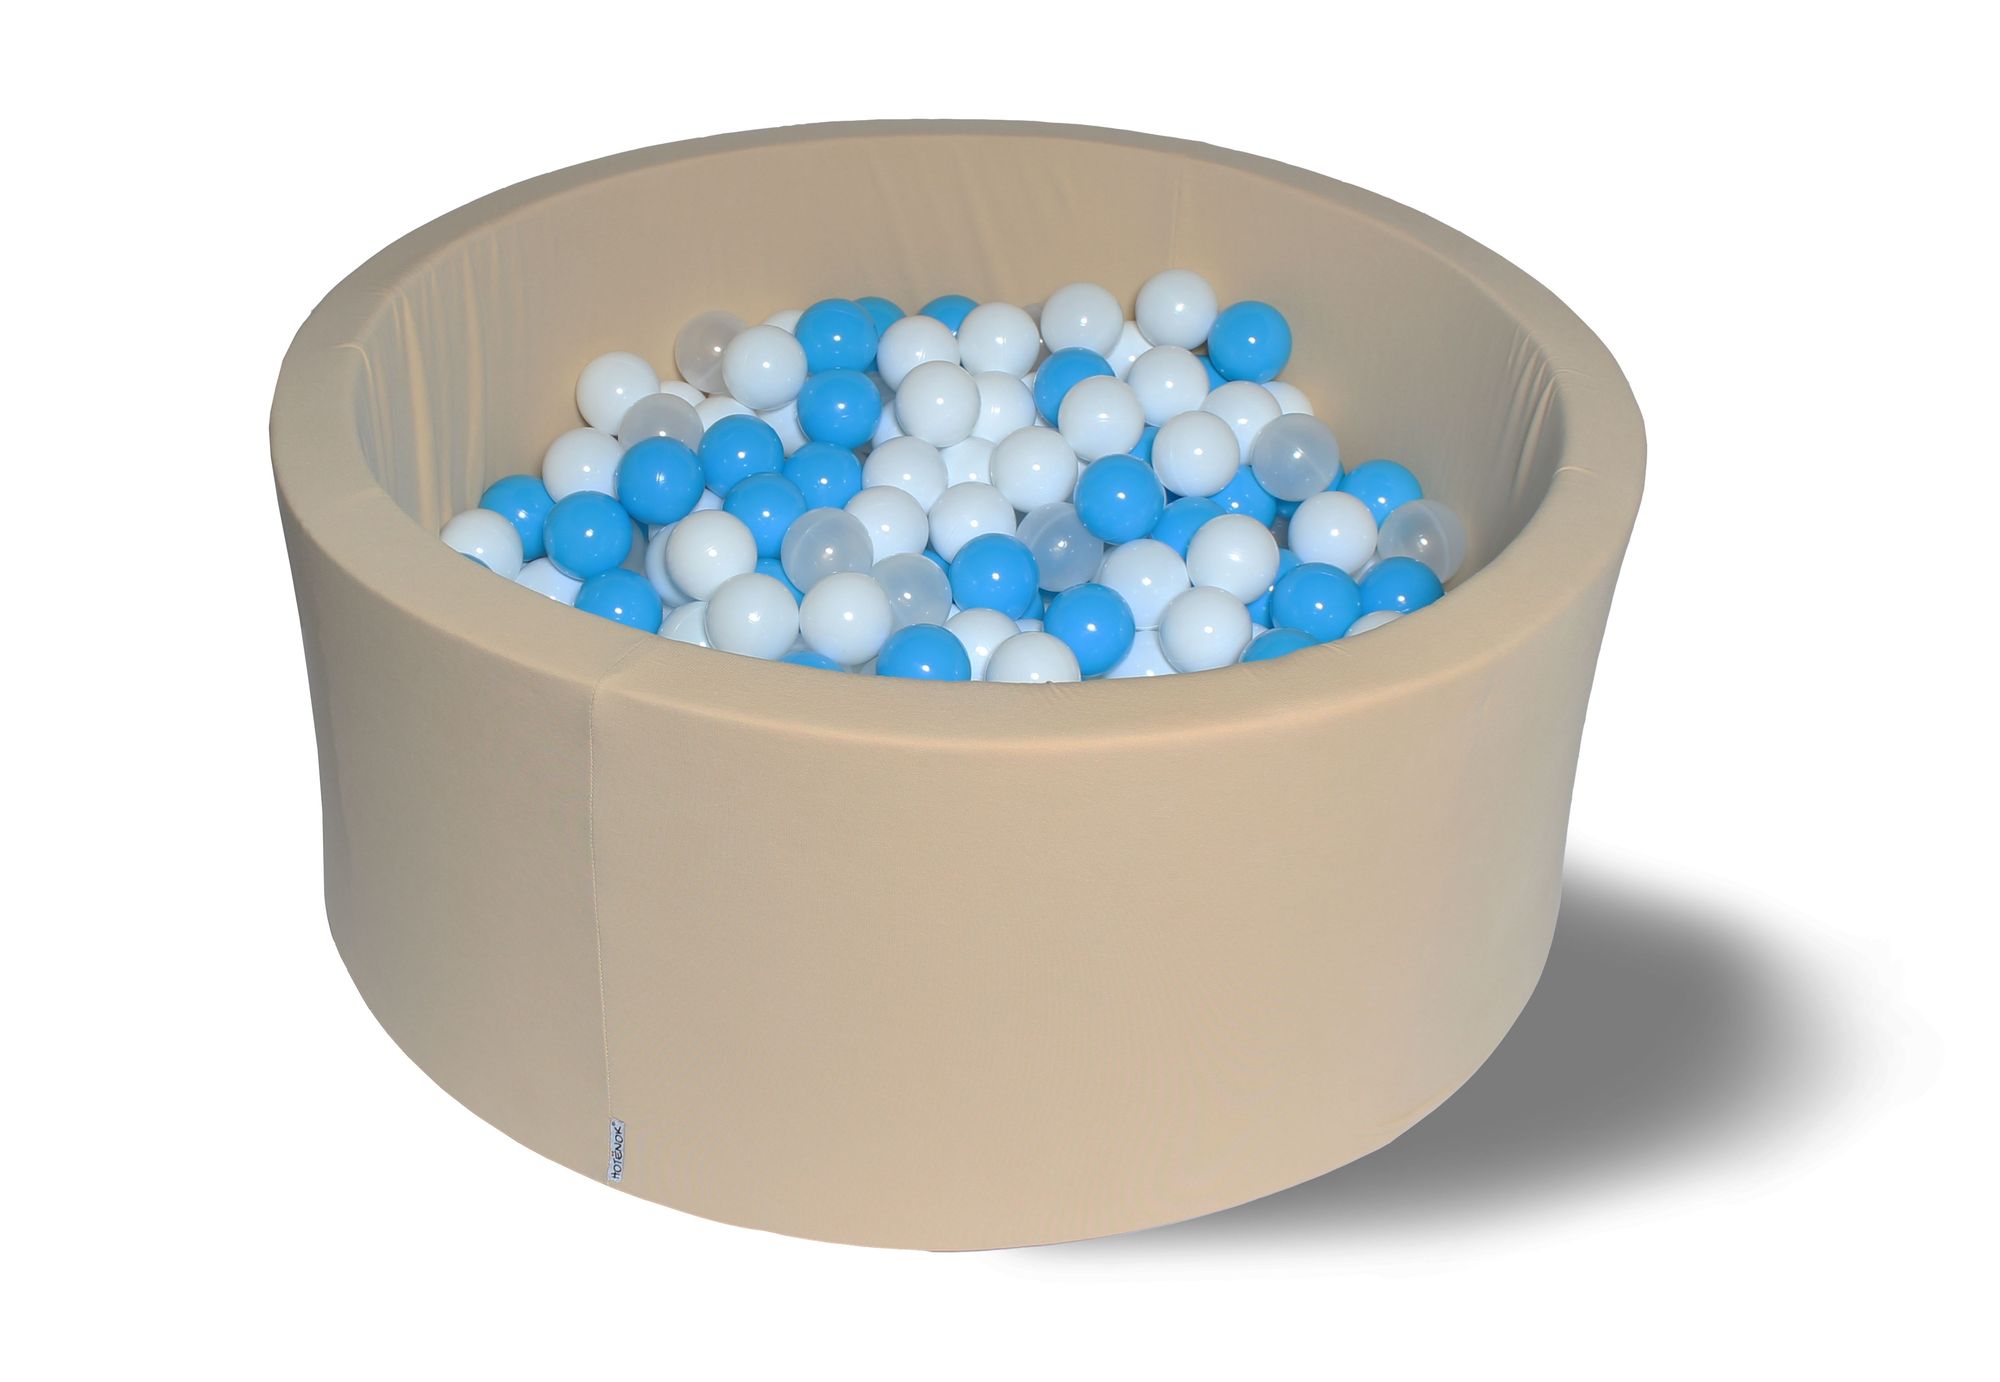 фото Сухой игровой бассейн ванильные облака 40см с 200 шарами: бел, прозр, голуб hotenok